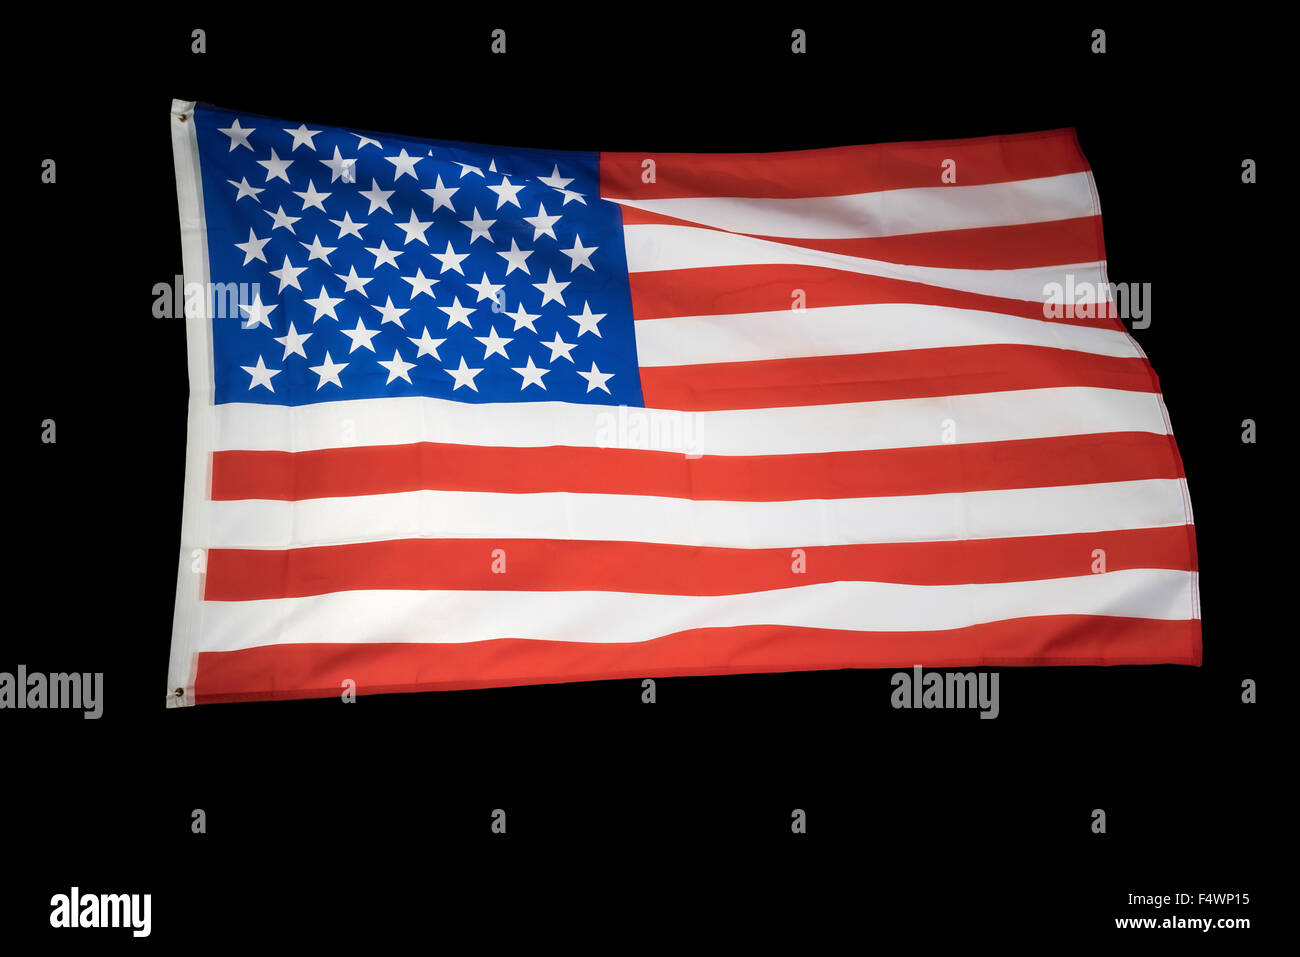 Old Glory, drapeau américain, US national flag Banque D'Images